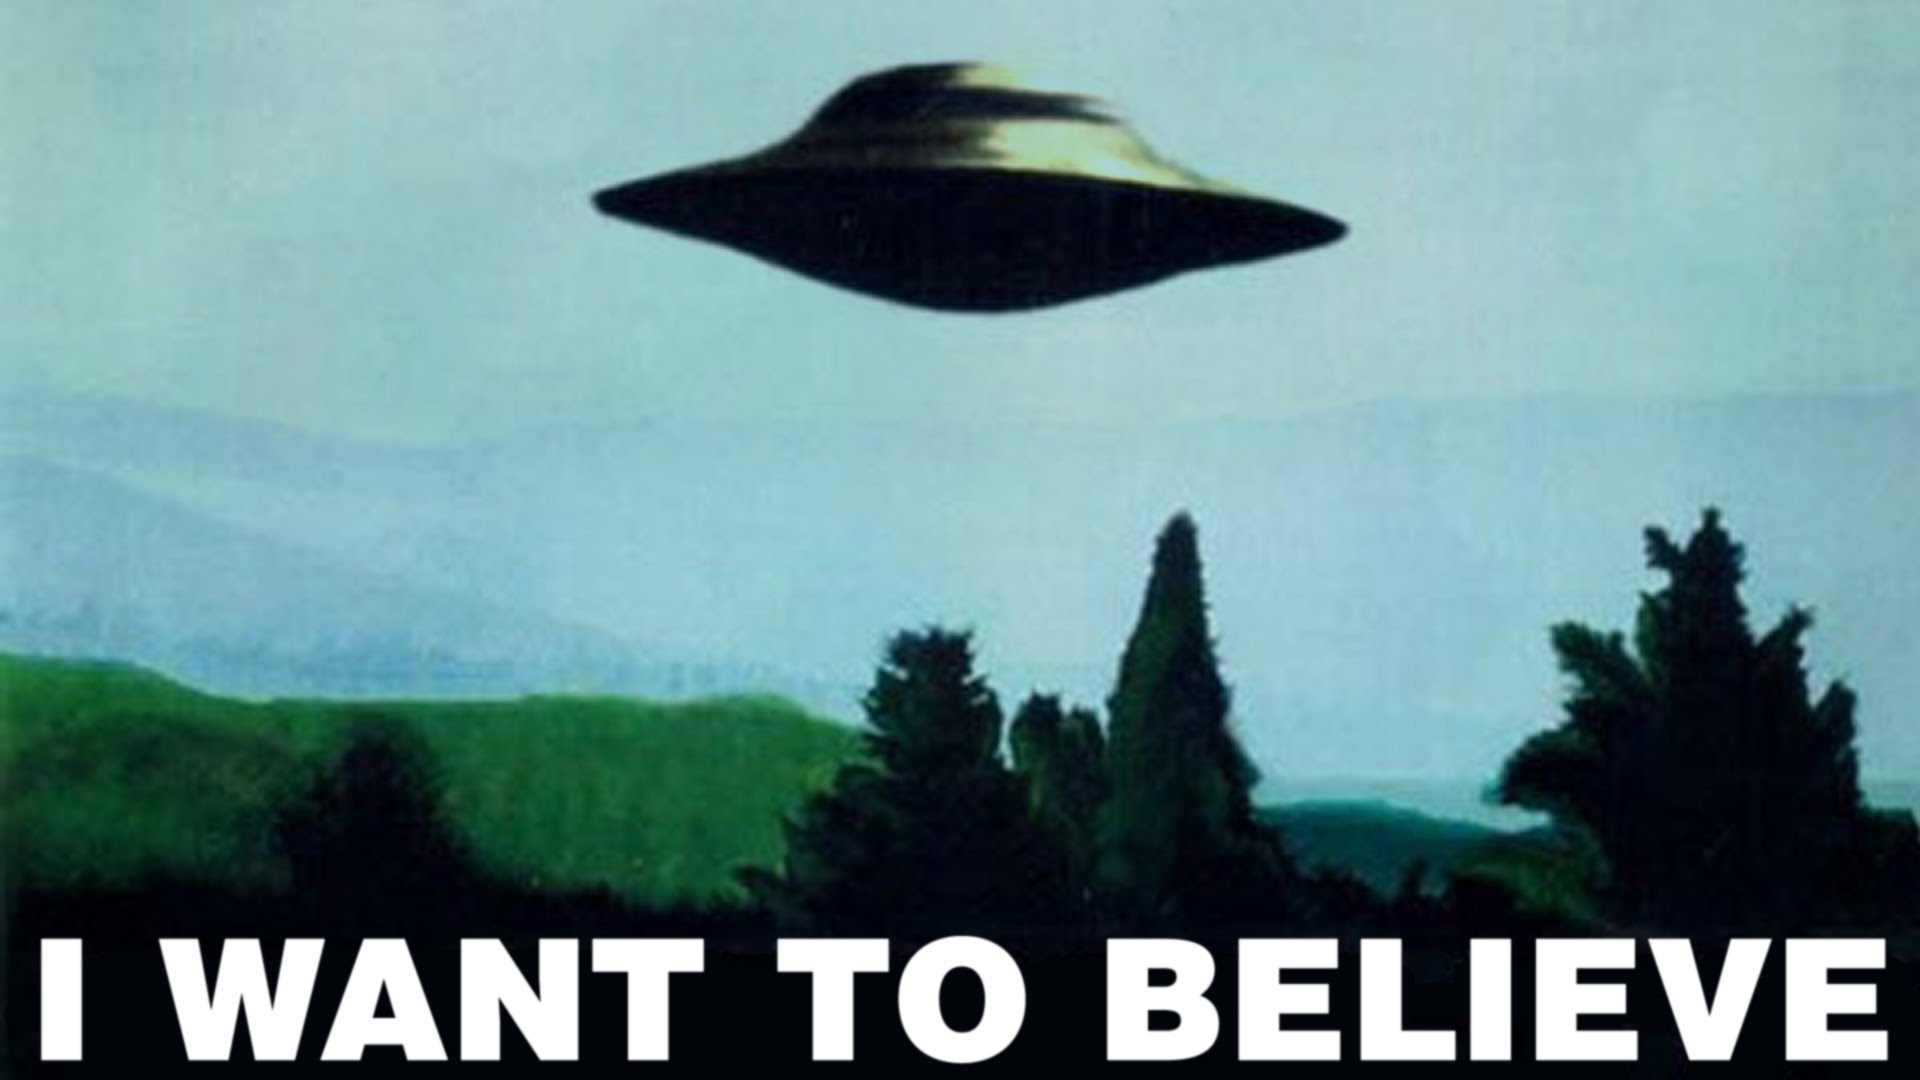 Das Pentagon bestätigte die Existenz des Programms für das Studium der Kontakte mit UFOs